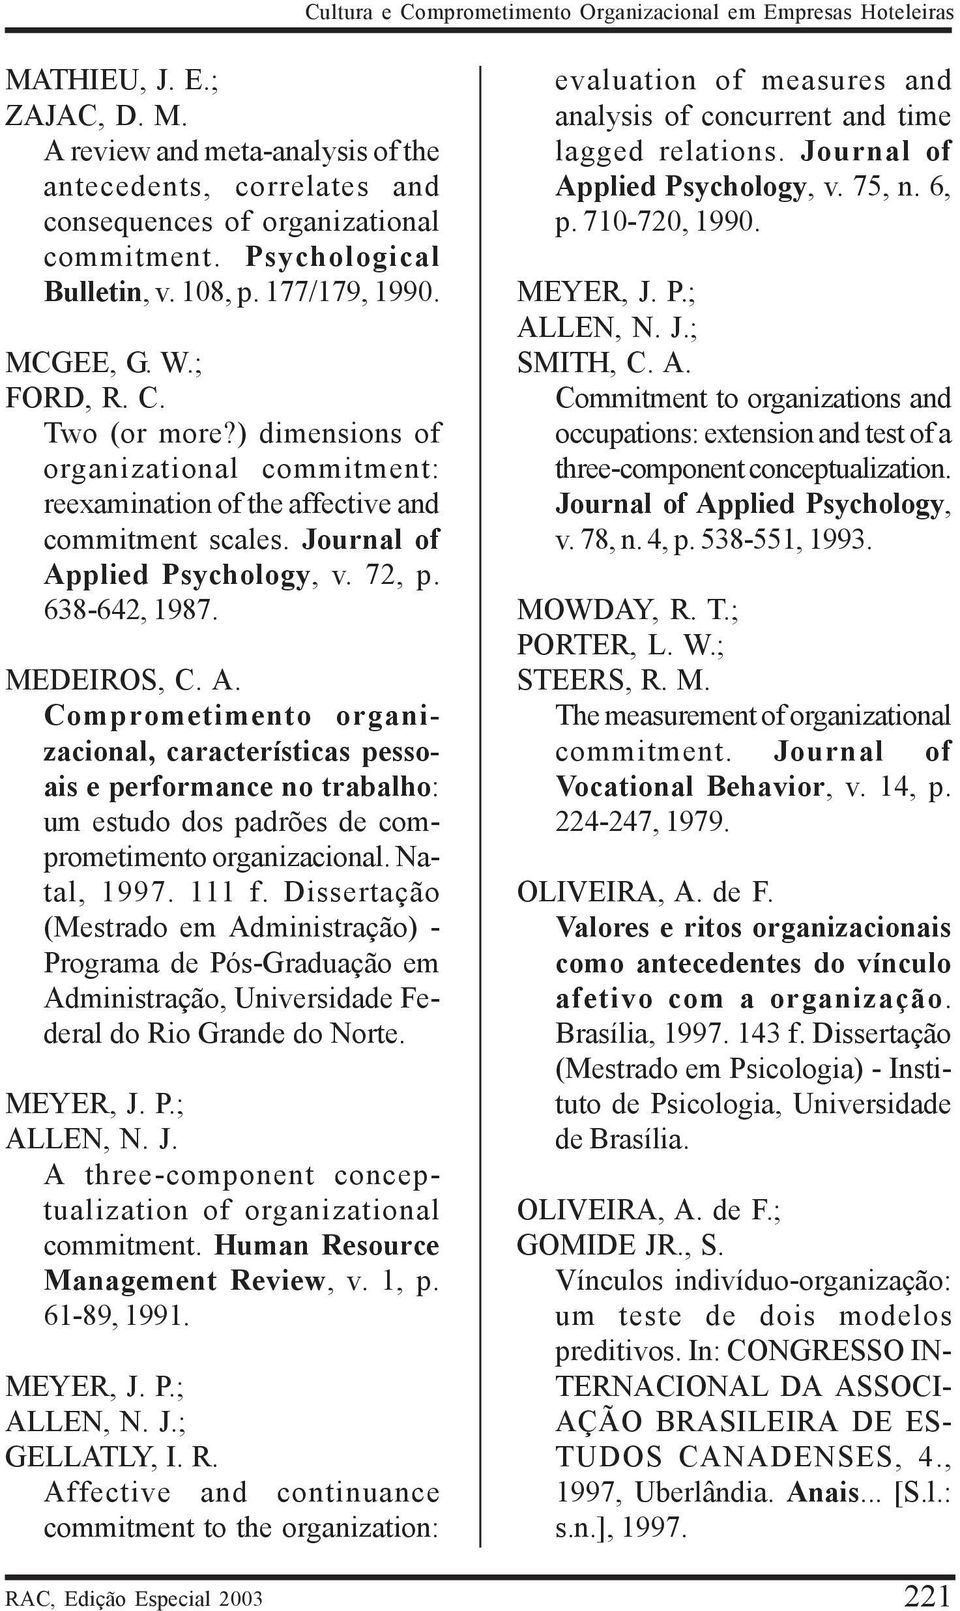 Journal of Applied Psychology, v. 72, p. 638-642, 1987. MEDEIROS, C. A. Comprometimento organizacional, características pessoais e performance no trabalho: um estudo dos padrões de comprometimento organizacional.